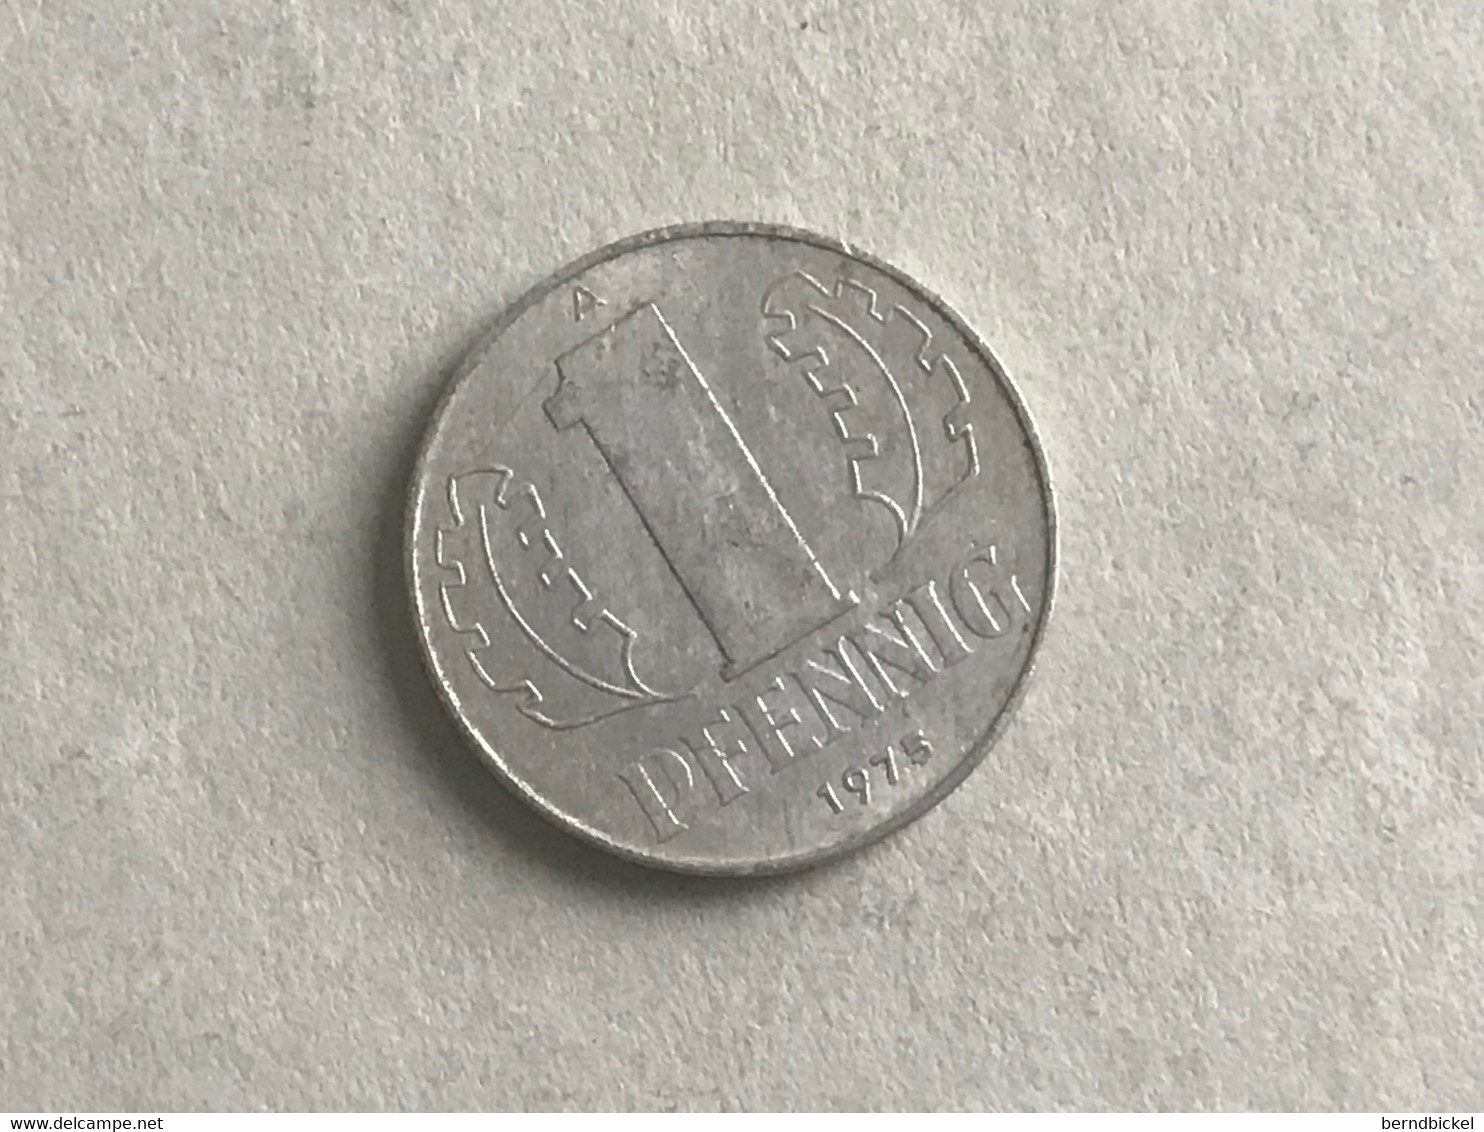 Münze Münzen Umlaufmünze Deutschland DDR 1 Pfennig 1975 - 1 Pfennig